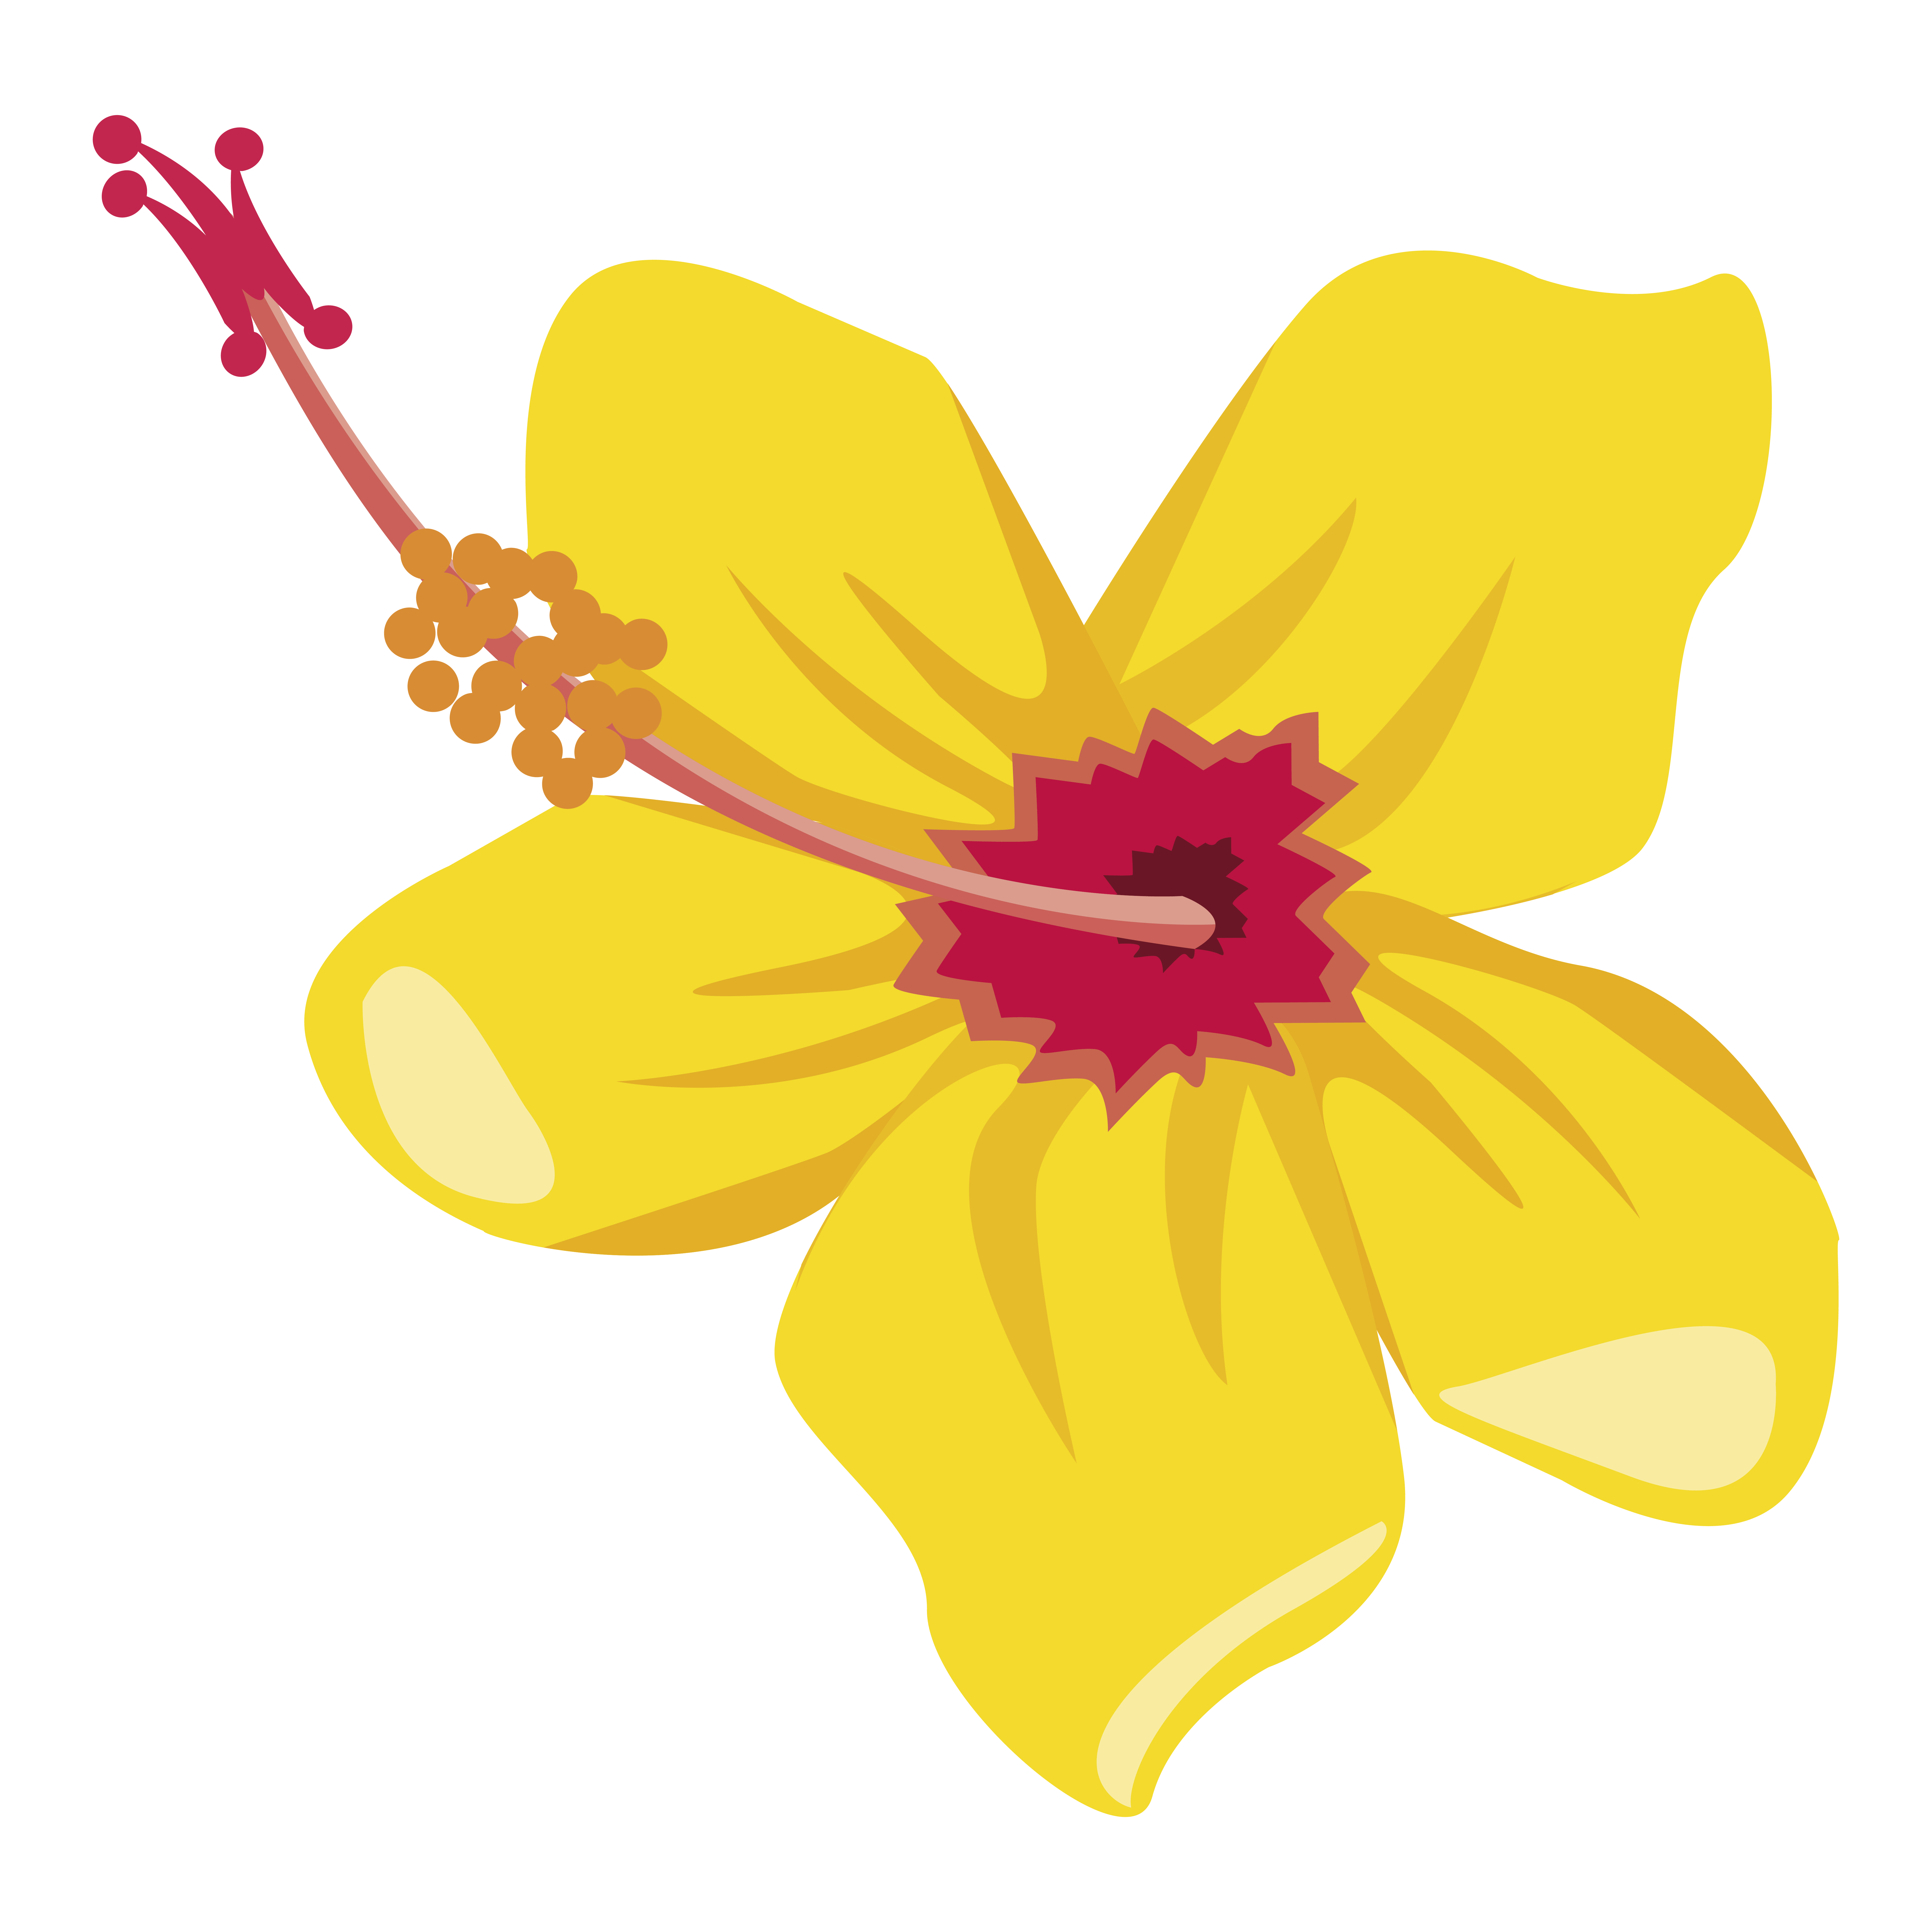 fleur tropicale jaune 2494785 - Telecharger Vectoriel Gratuit, Clipart  Graphique, Vecteur Dessins et Pictogramme Gratuit